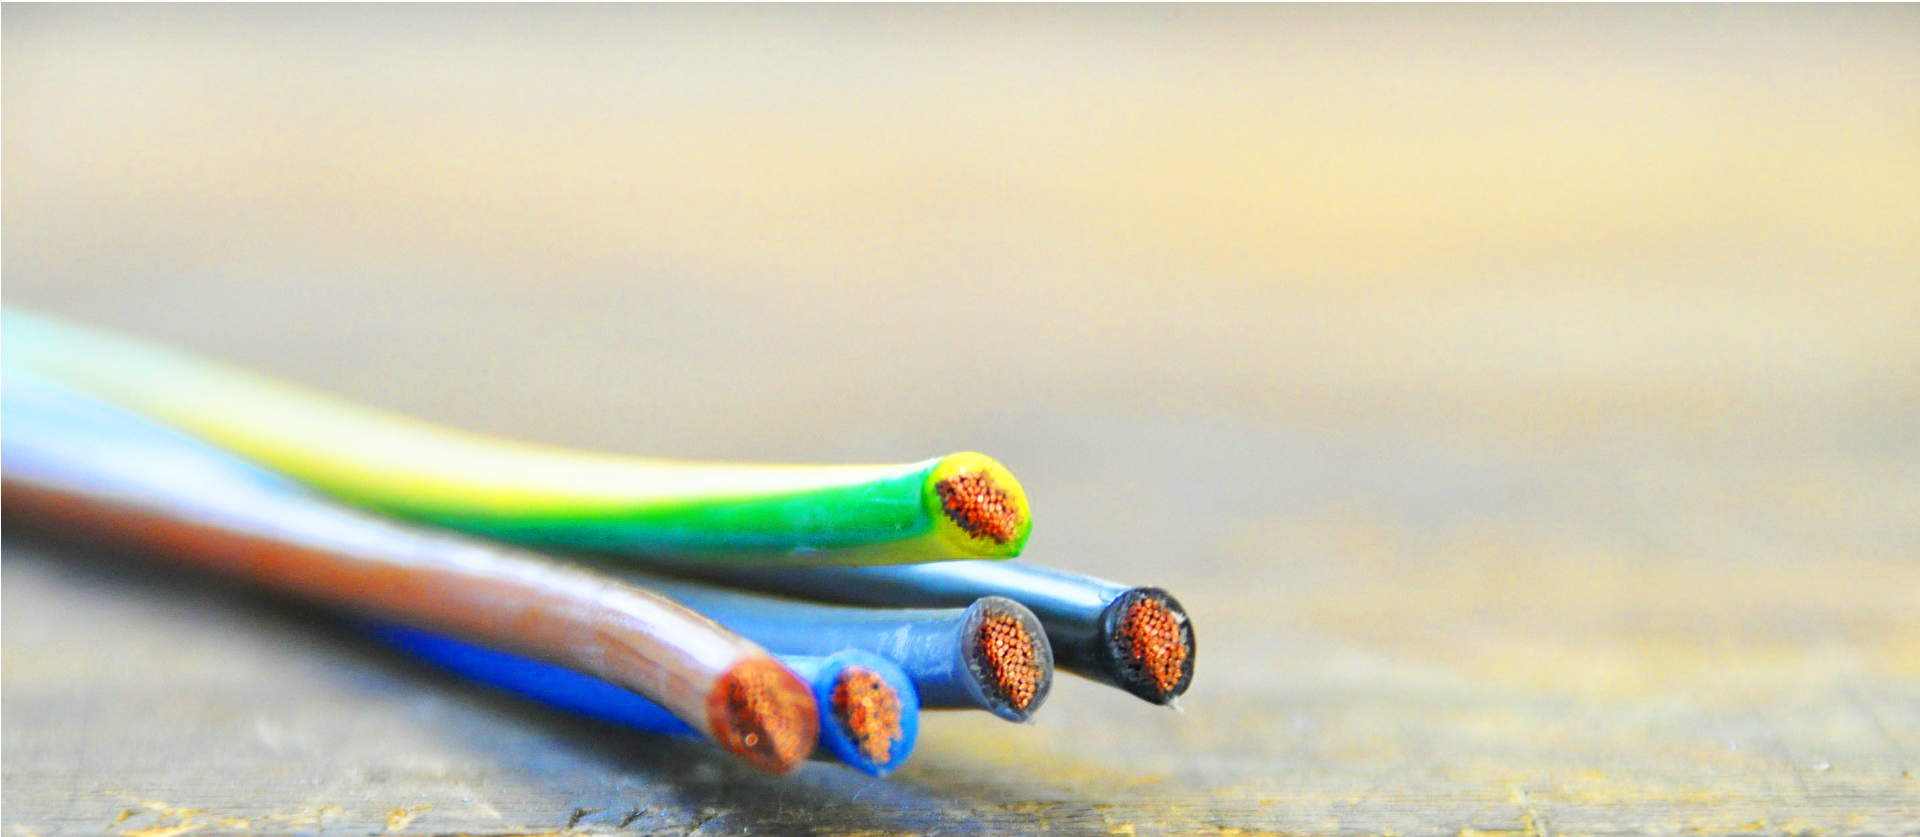 Imagen que muestra cables eléctricos de distintos colores